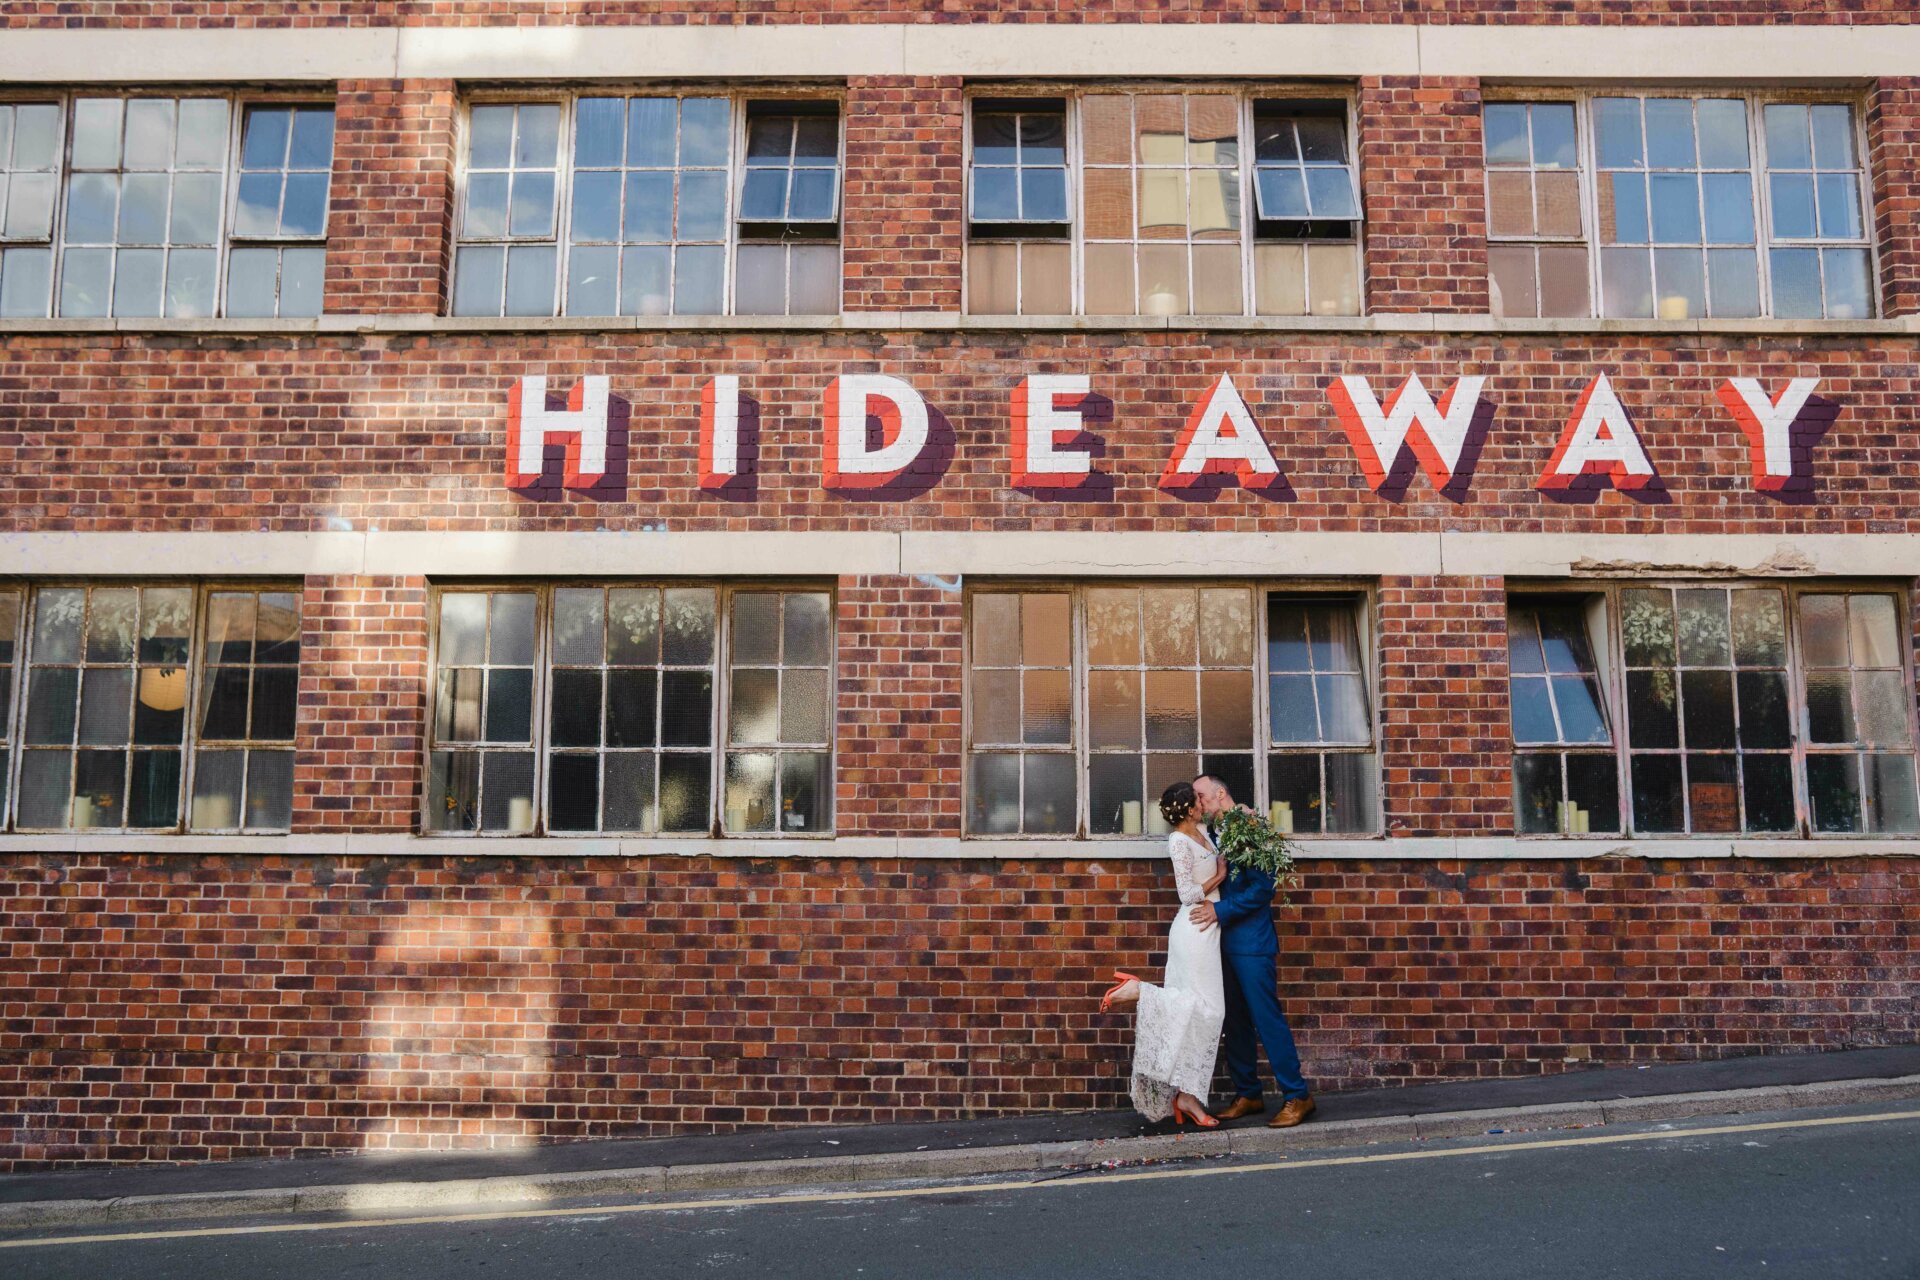 Hideaway Sheffield